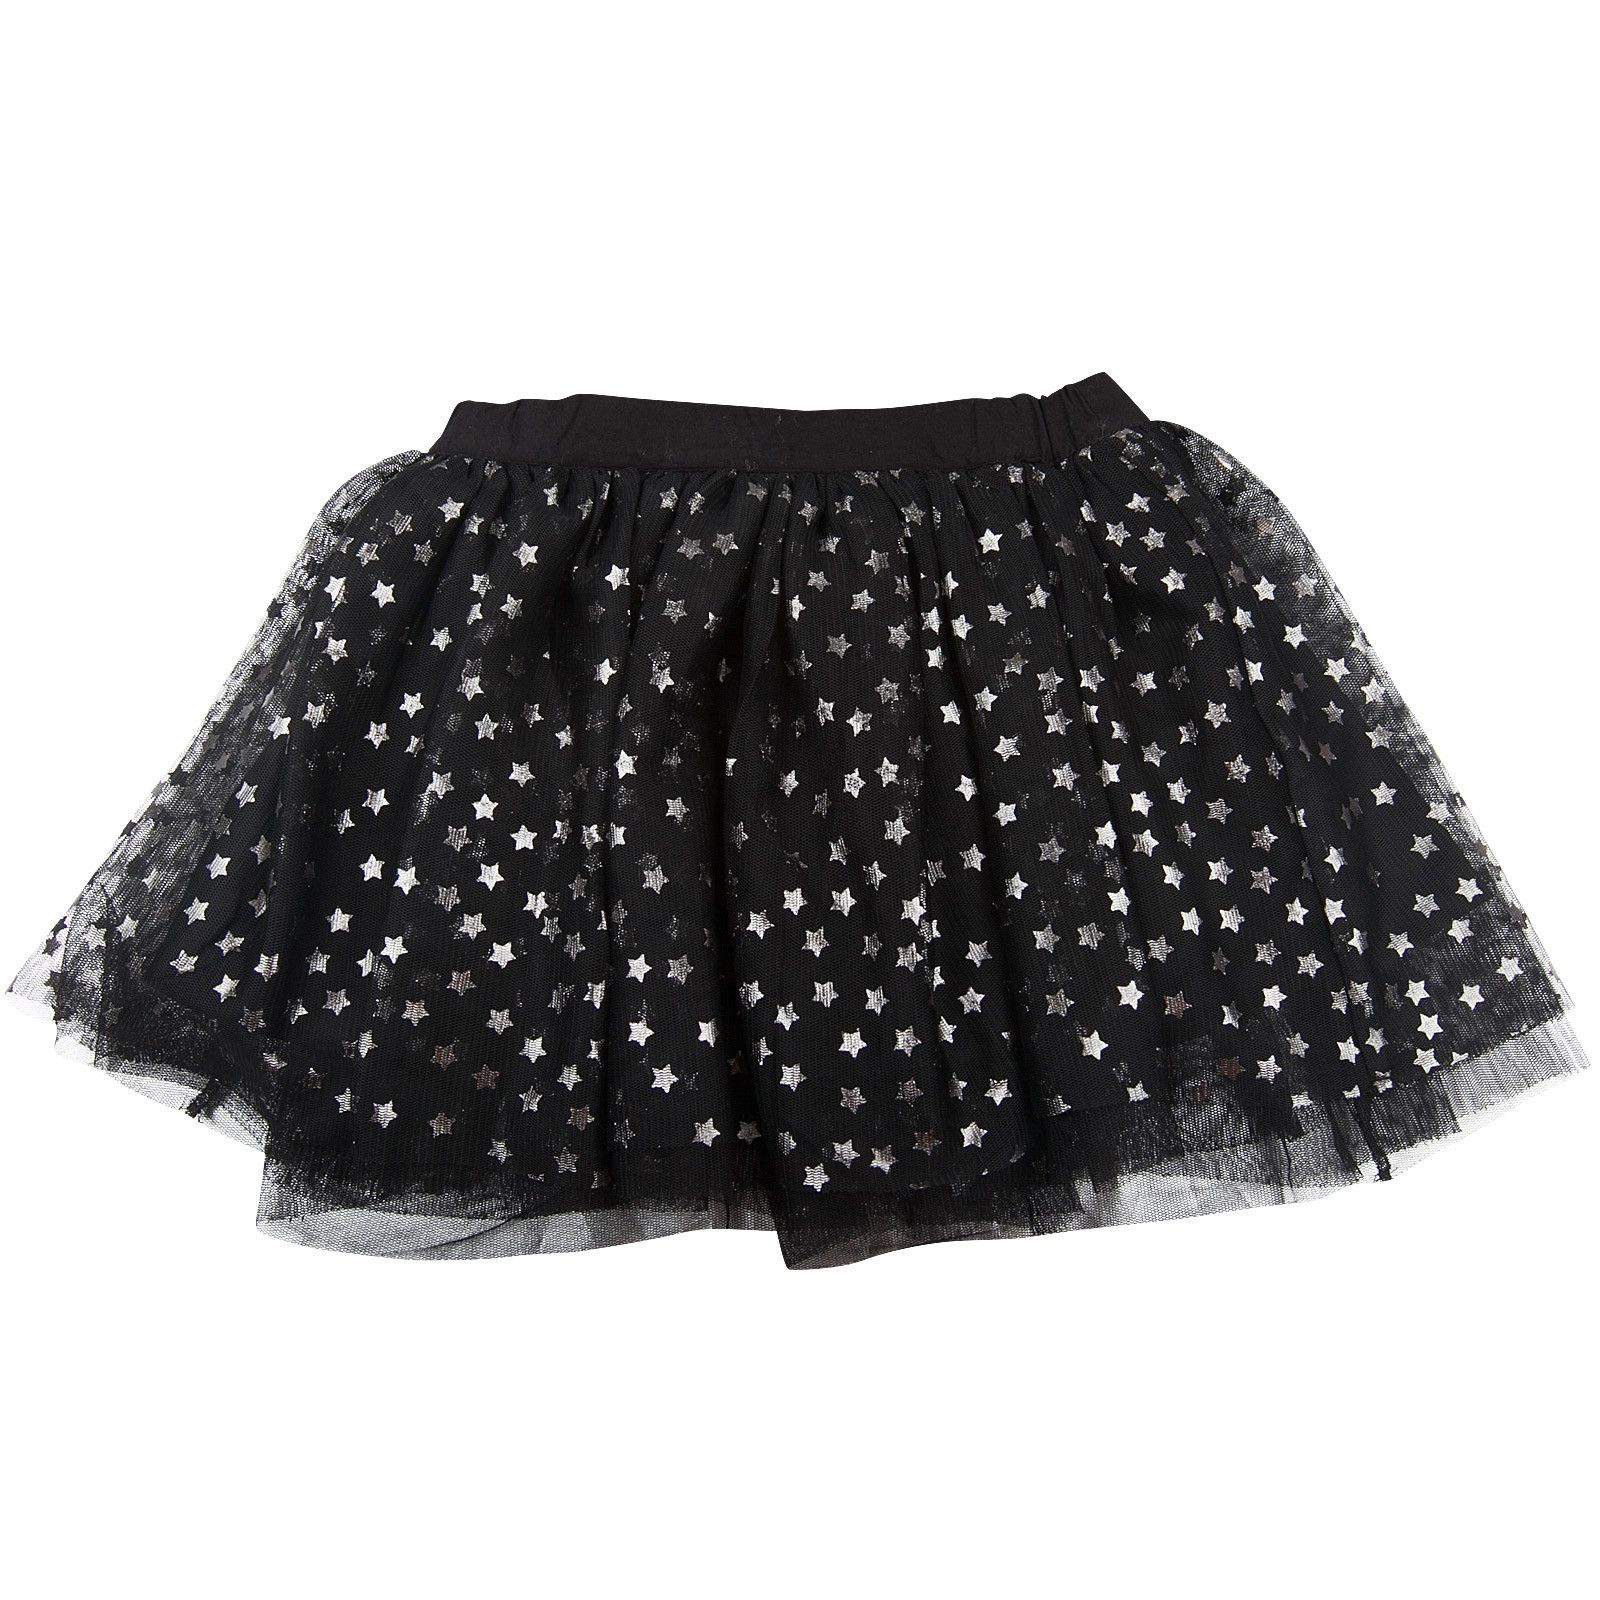 Honey Girls Black Tulle Skirt With Silver Stars - CÉMAROSE | Children's Fashion Store - 1